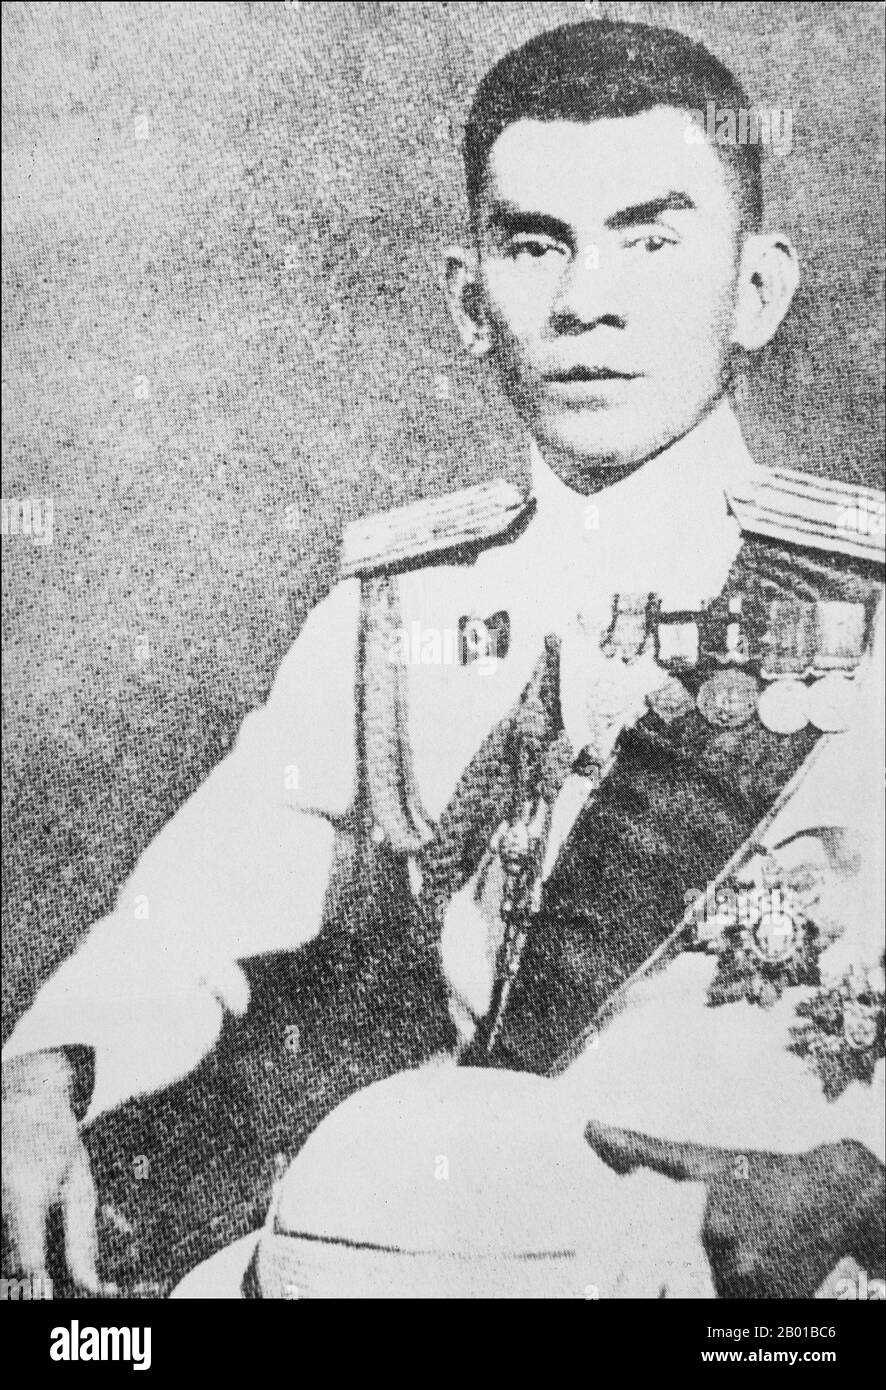 Le contre-amiral Thawan Thamrongnawawasawat, également orthographié Thawal Thamrongnavawawat et né Thawan Tharisawat, a été Premier ministre de Thaïlande de 1946 à 1947. Officier naval d'ascendance chinoise, l'amiral Thamrong a été un membre de premier plan du mouvement anti-japonais de résistance thai durant la Seconde Guerre mondiale Il est devenu Premier ministre de la Thaïlande sur 23 août 1946, en remplacement de Pridi Banomyong. Cependant, il a été démis de ses fonctions par un coup d'État militaire orchestré par le Pibulsonggram du maréchal Plaek sur 8 novembre 1947. Il a été forcé de quitter le pays et a vécu à Hong Kong pendant une période. Banque D'Images